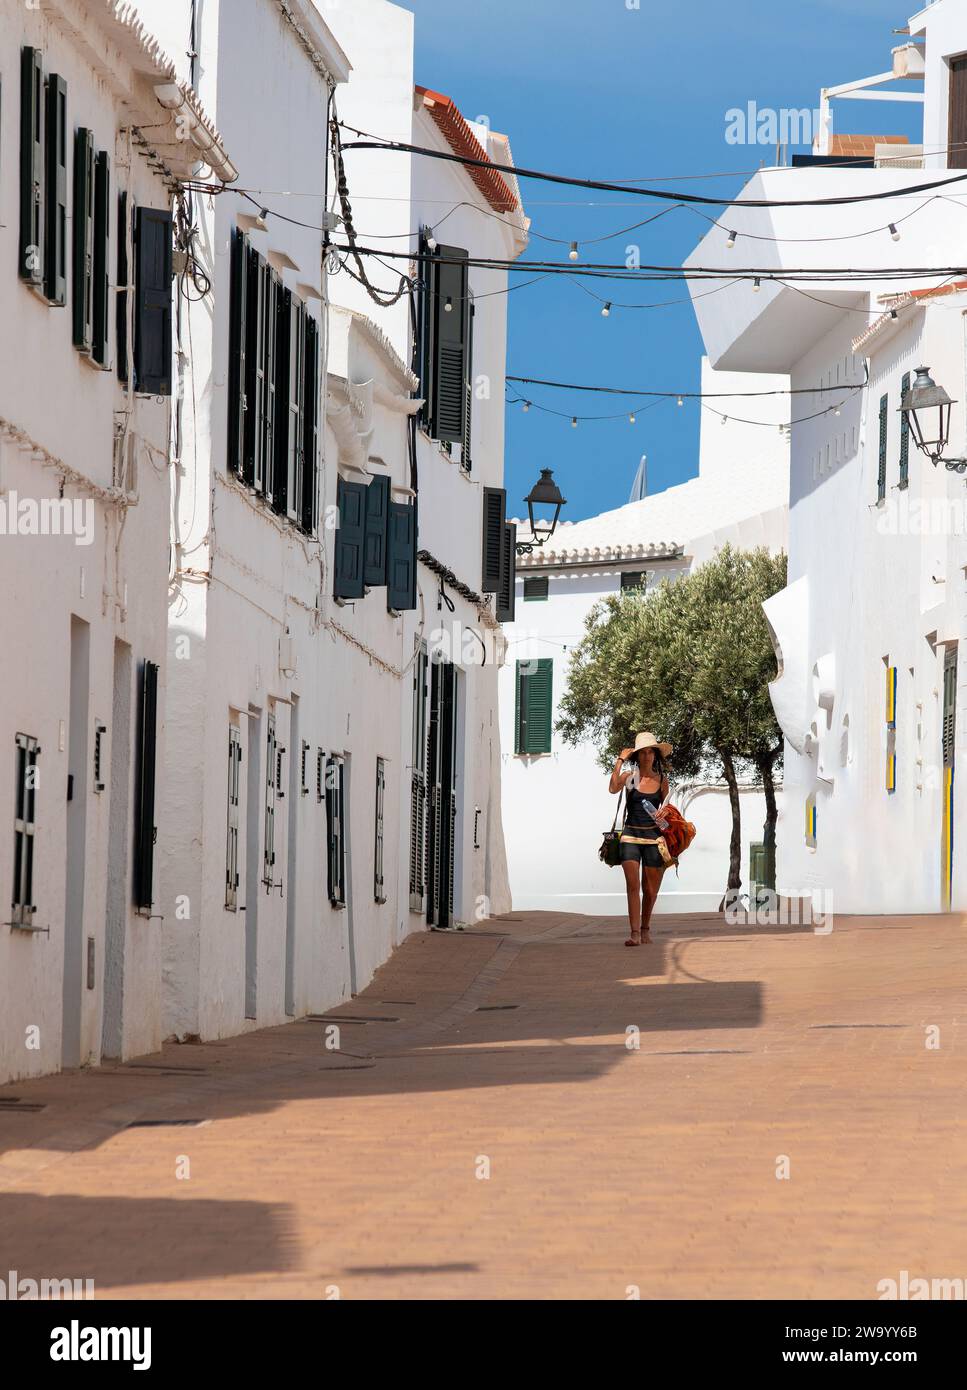 Une femme portant un chapeau de soleil marchant dans une rue à Fornells Menorca Espagne. Banque D'Images